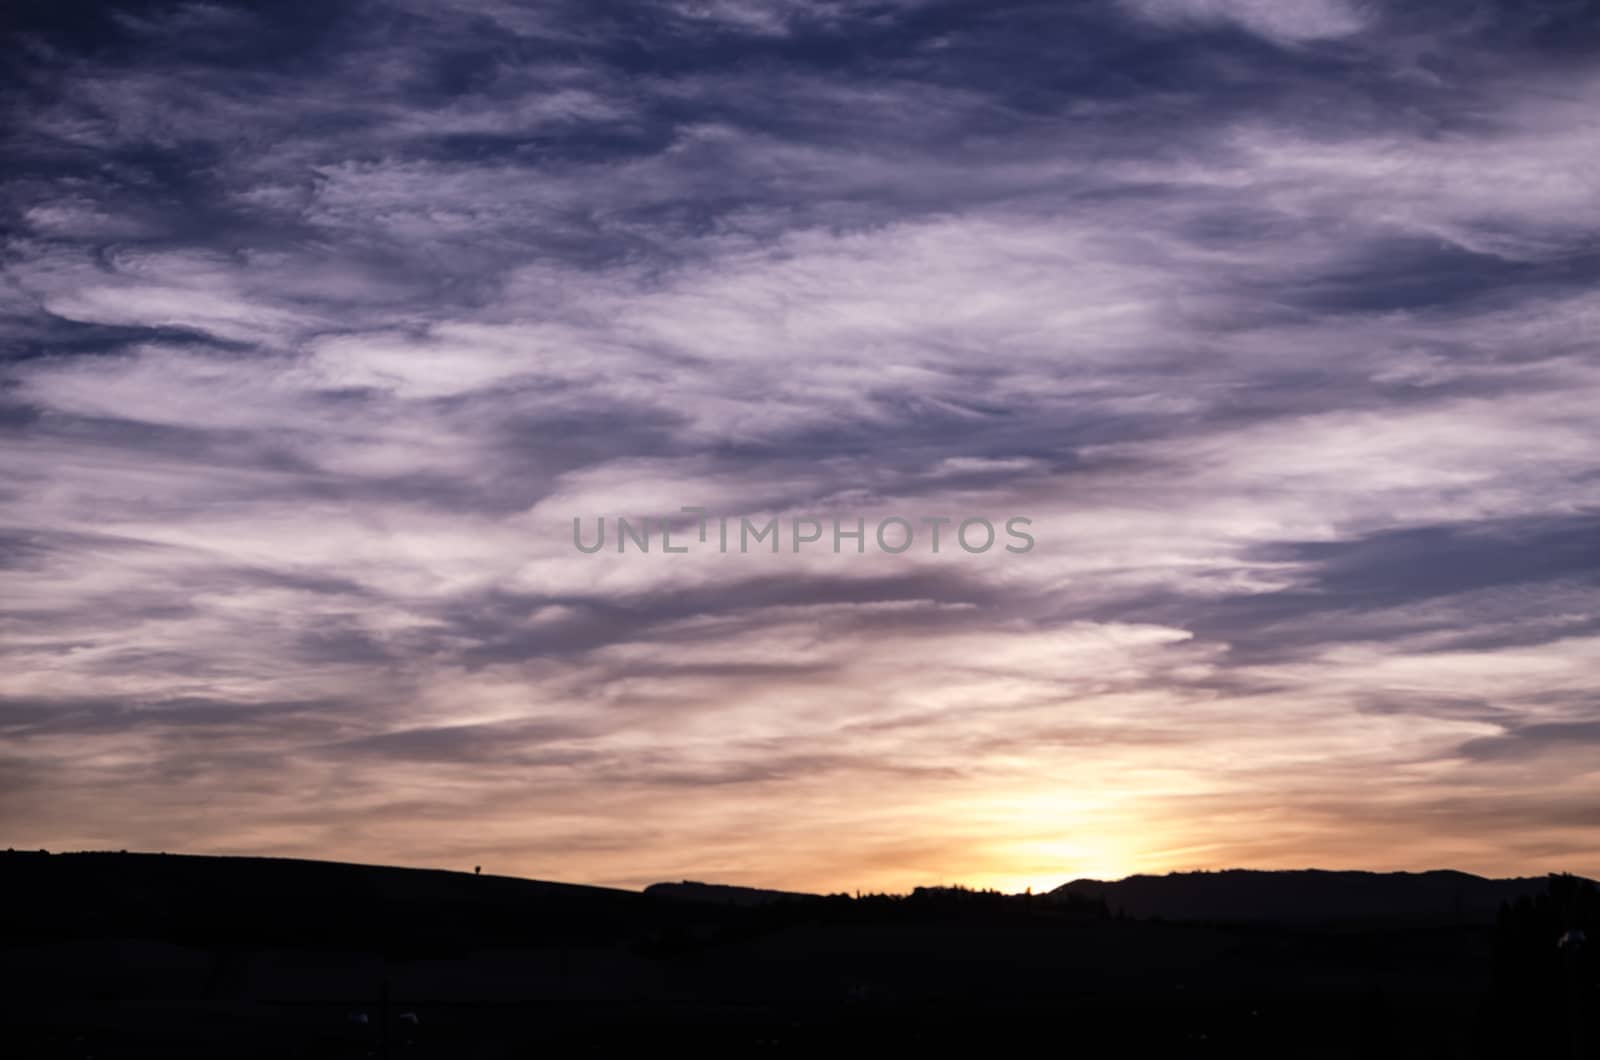 Blue, purple, orange and yellow beautifull sunset behind the hill of Zizur, Navarra, Spain